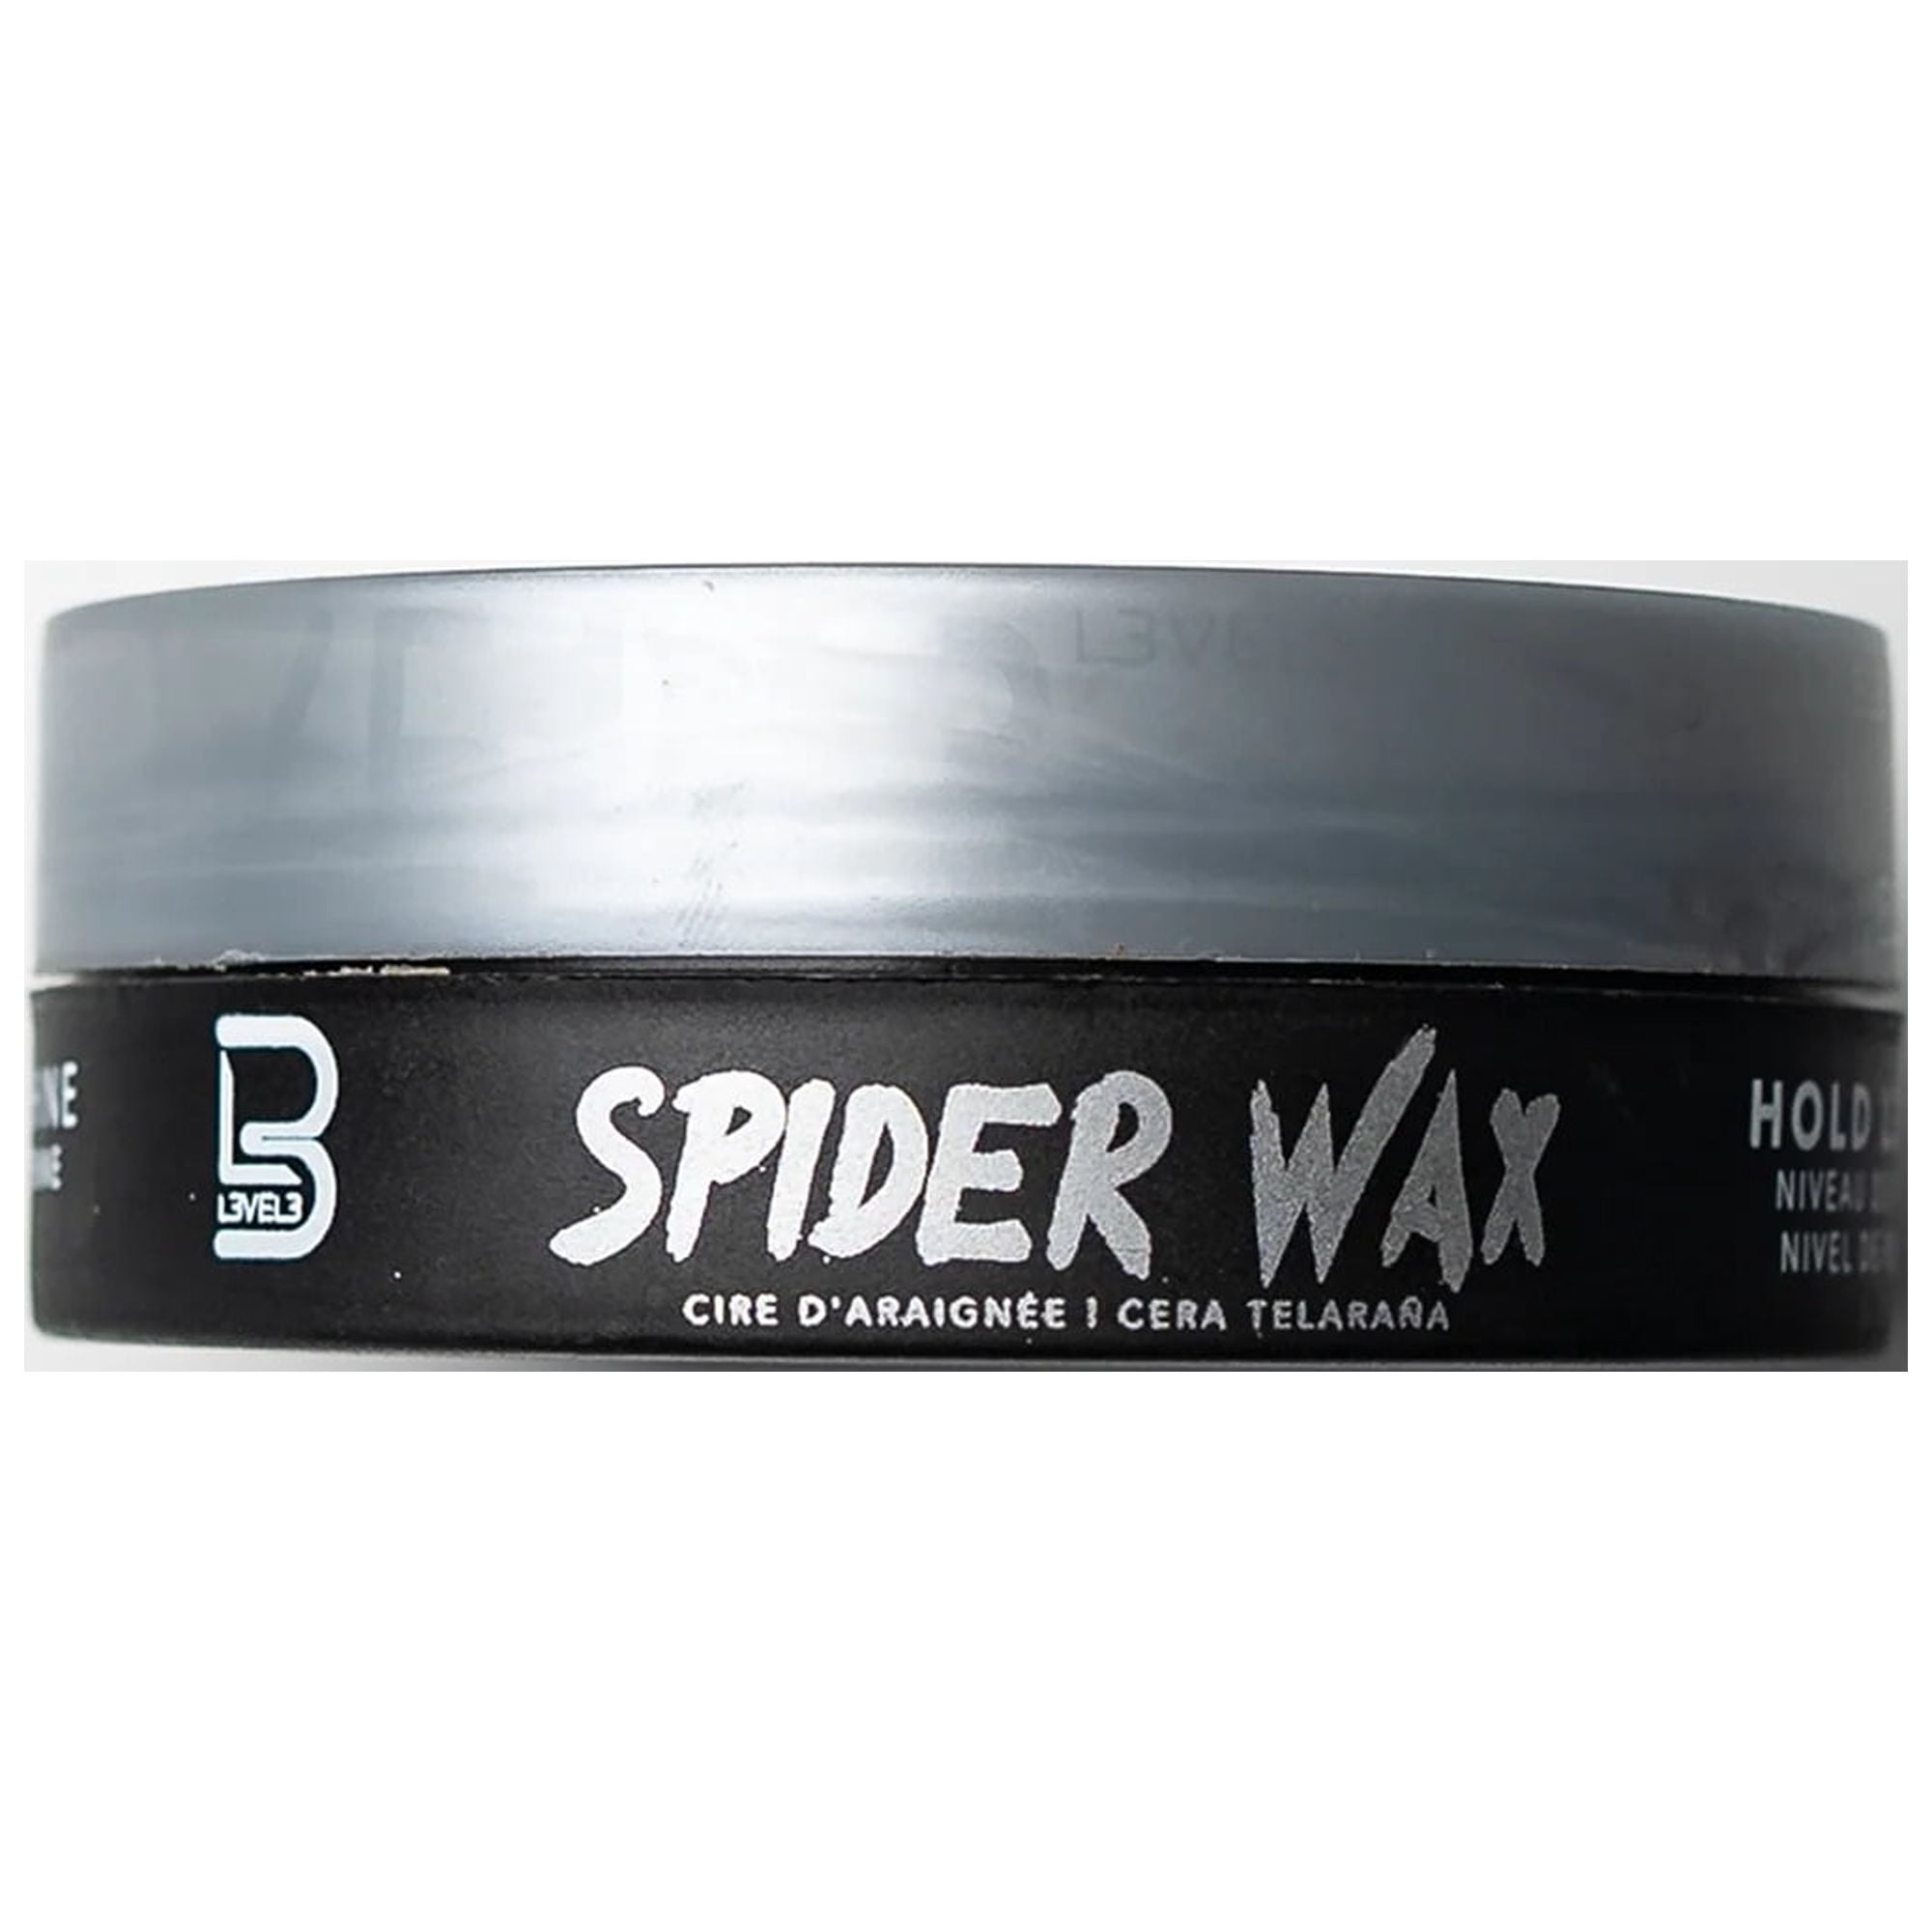 spider wax hair